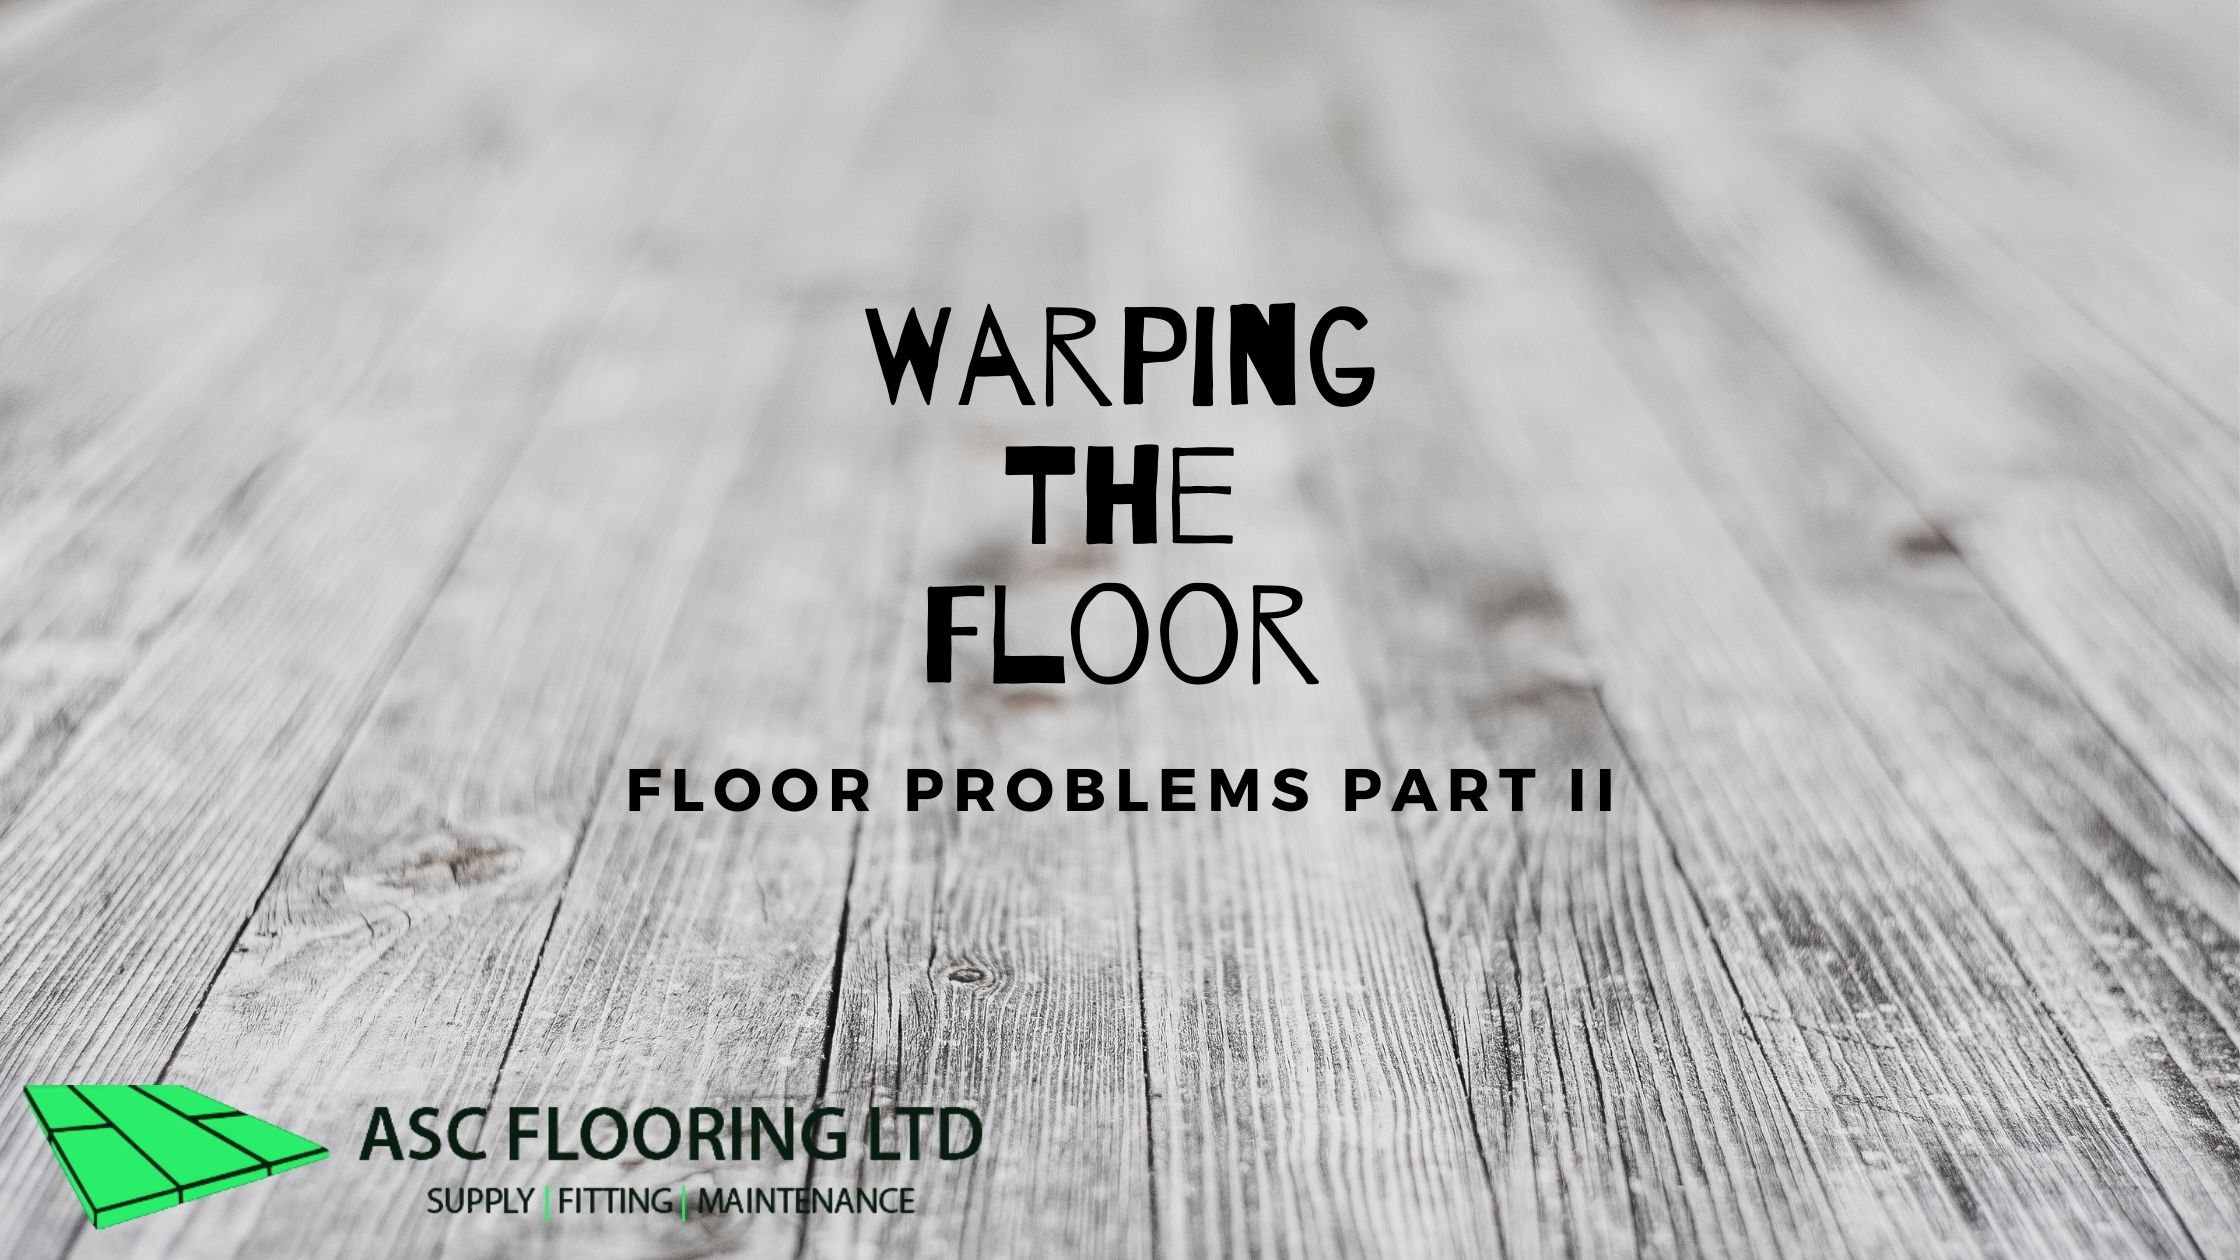 Warping the floor